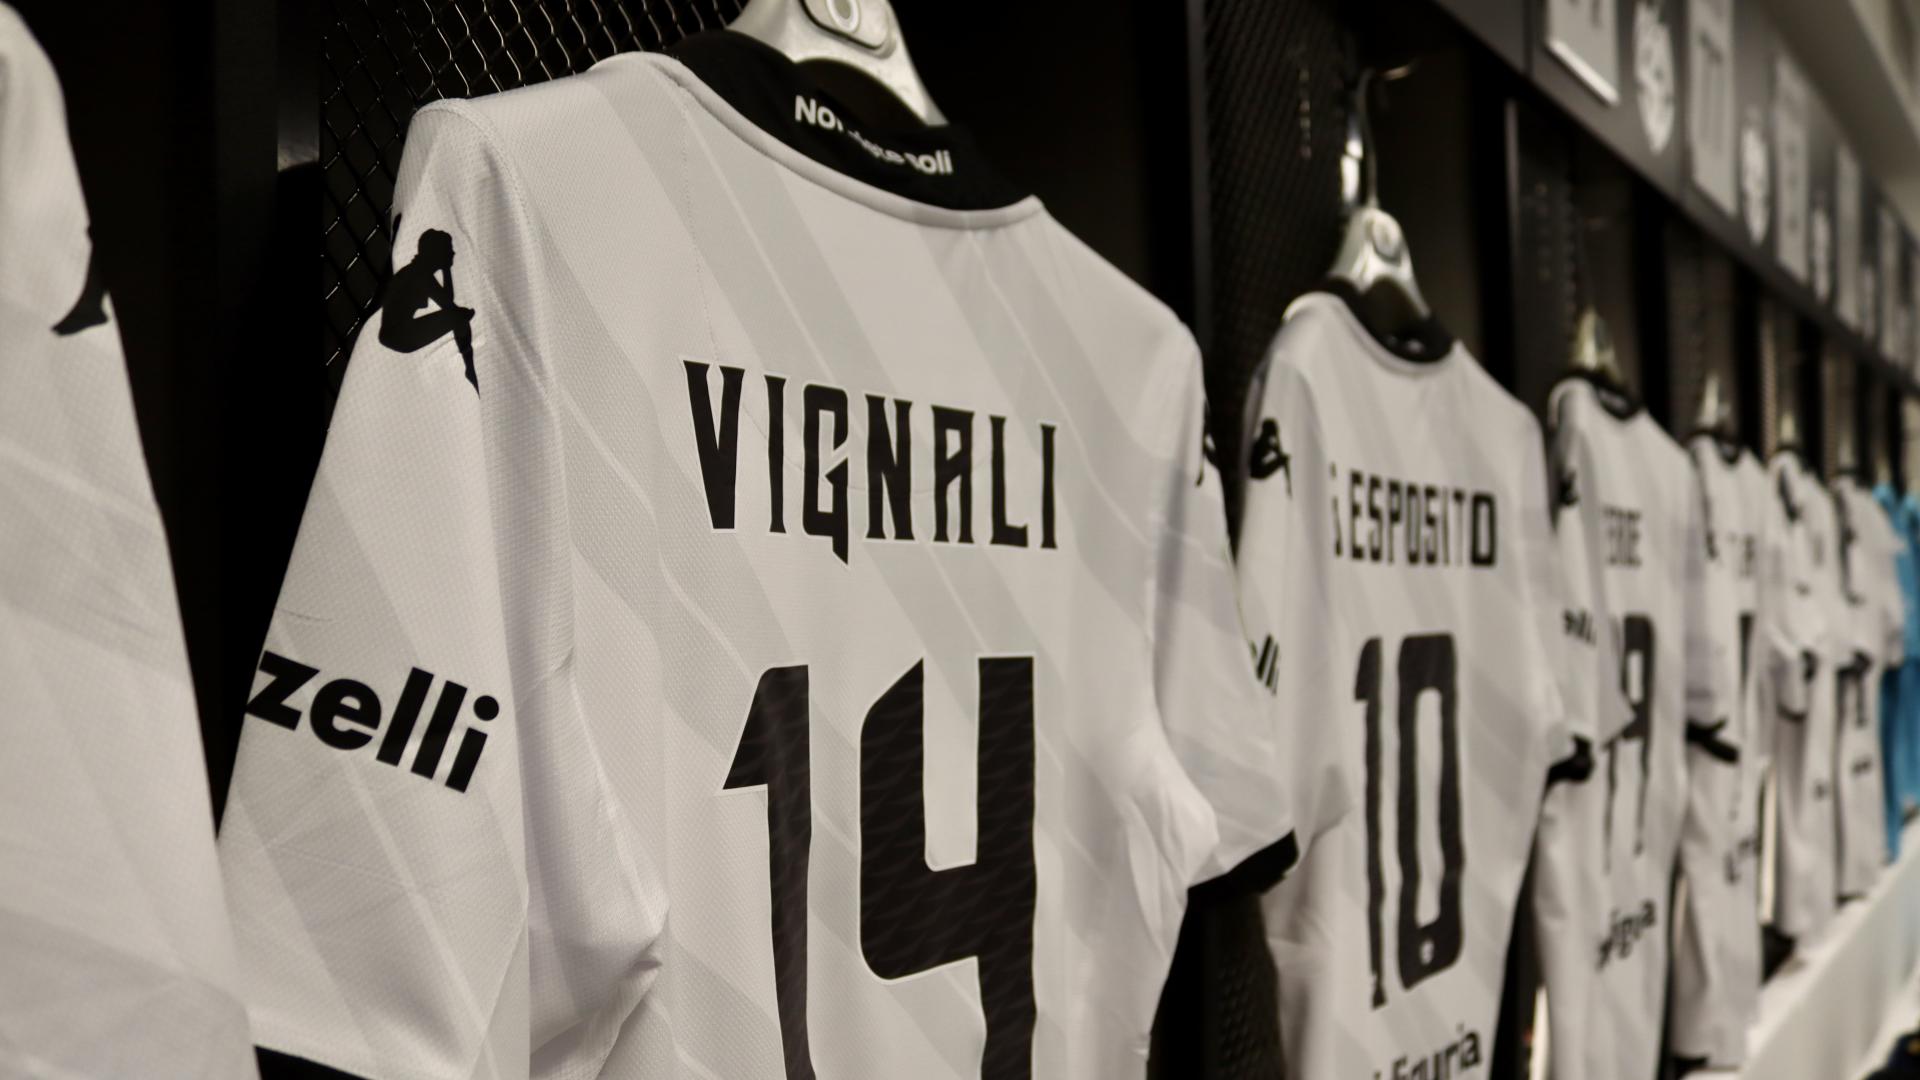 Spezia-Ascoli: 150 attendance in white shirt for Luca Vignali